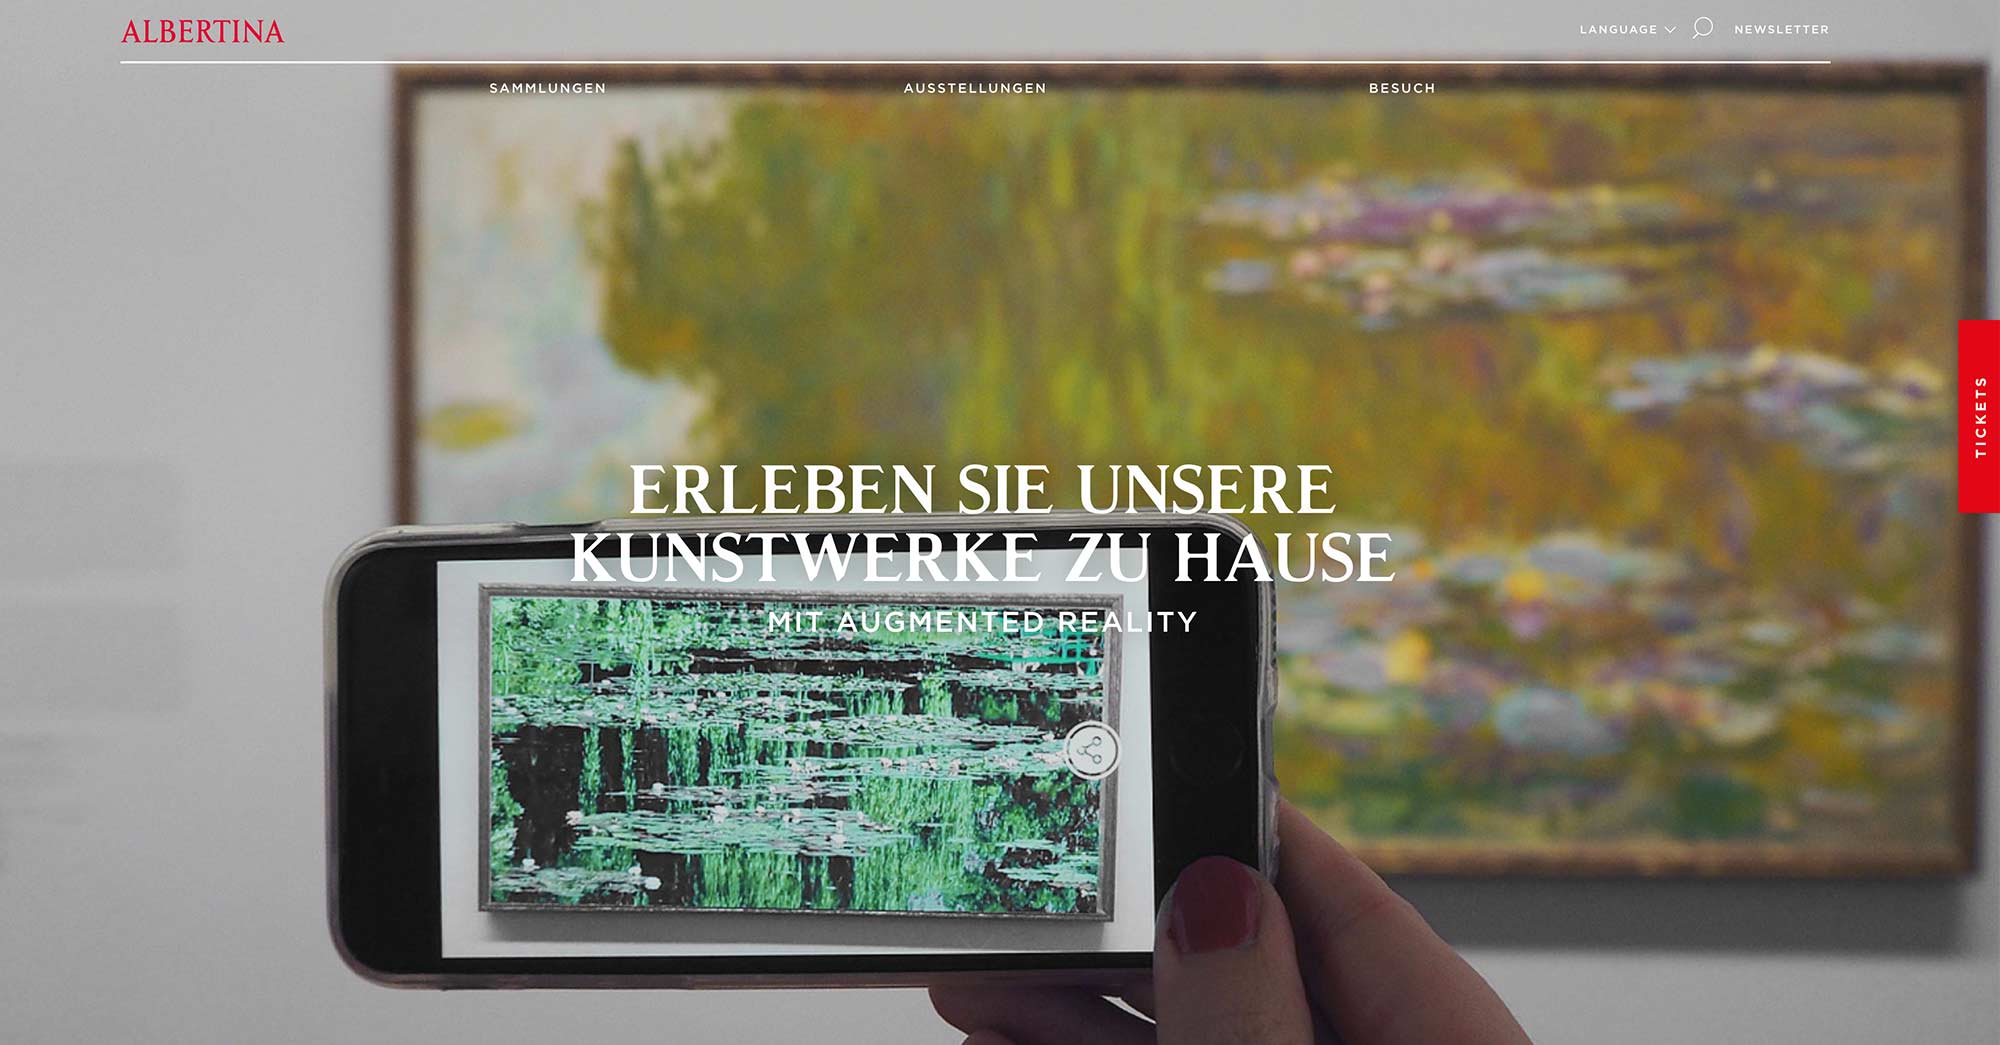 Albertina Museum Wien virtuell erleben - Virtueller Rundgang